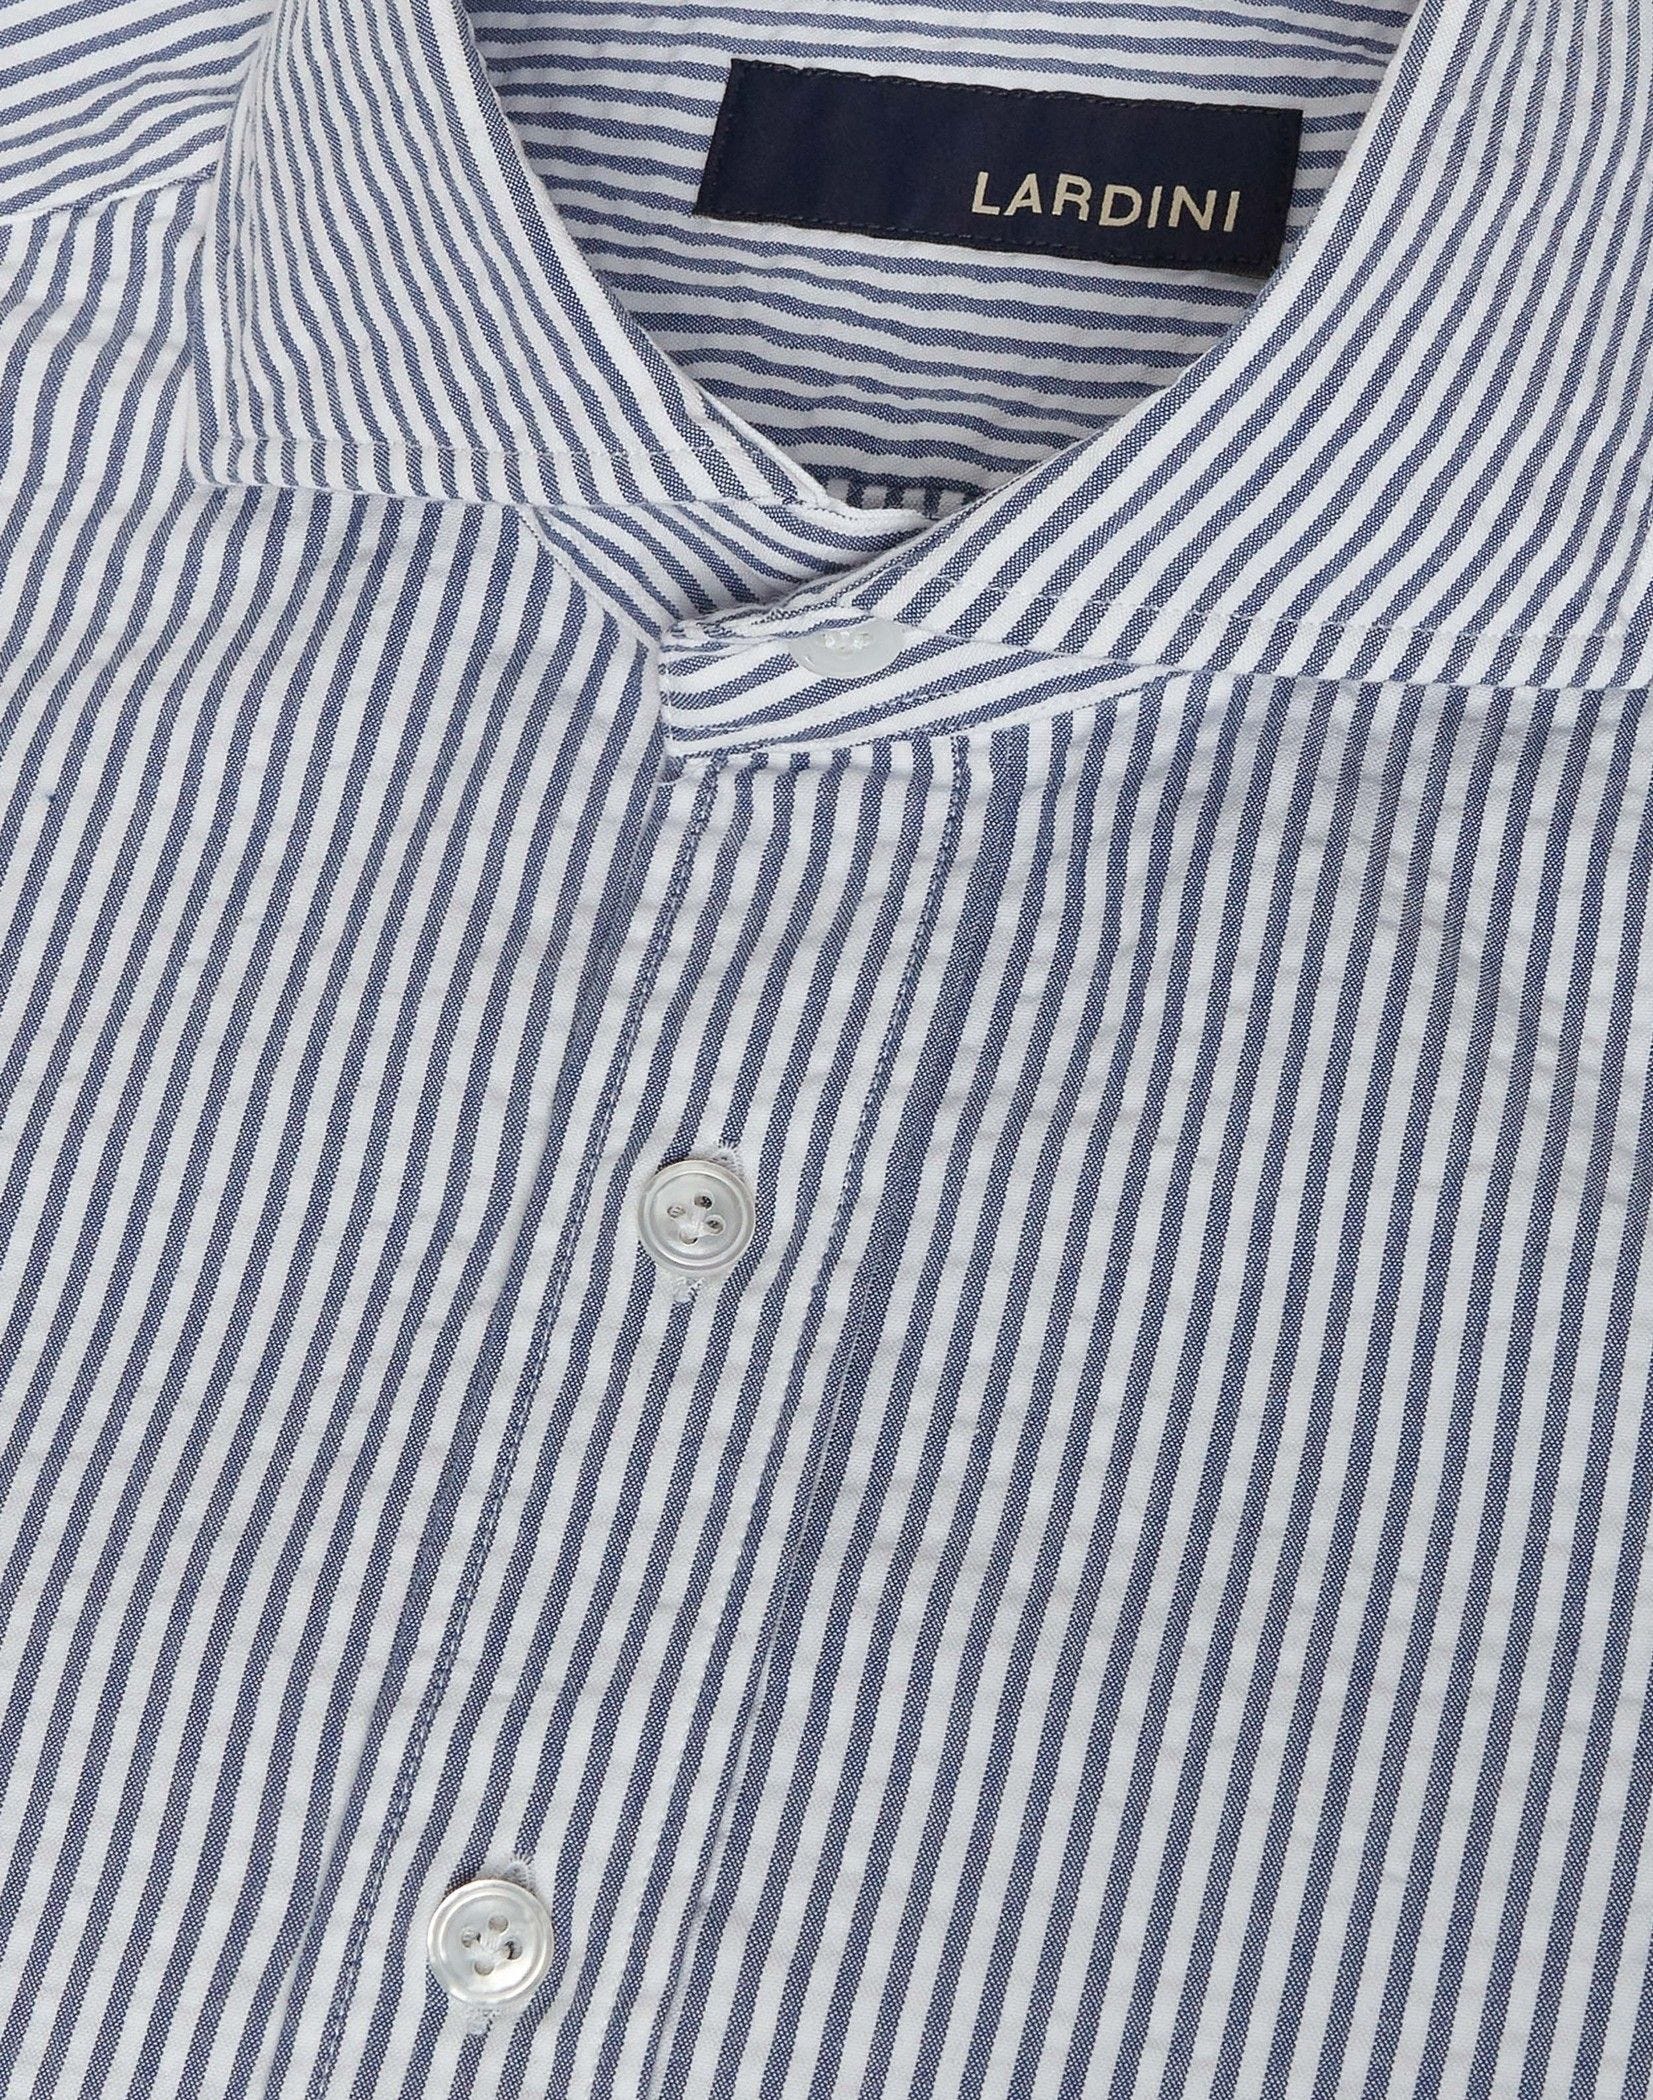 Blue and white seersucker cotton shirt